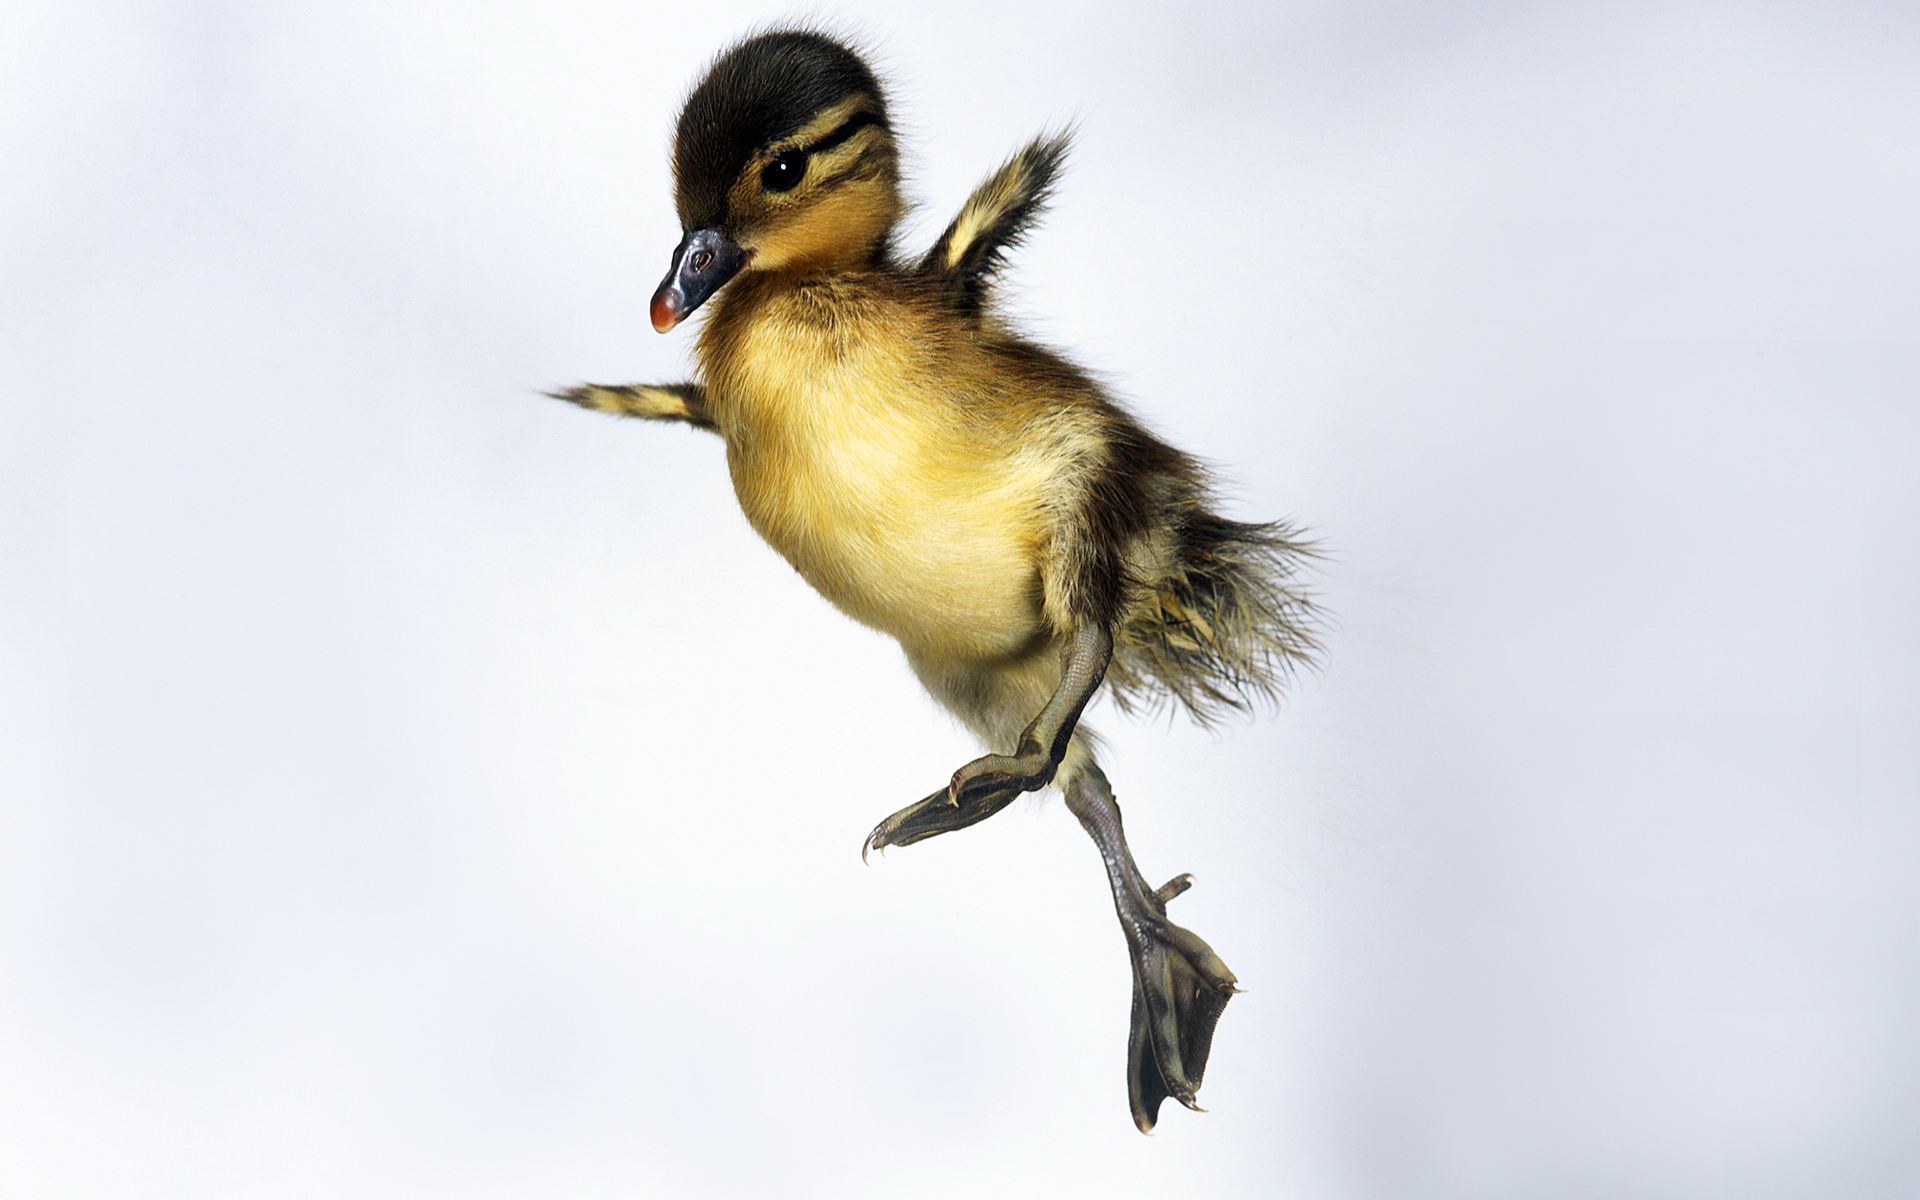 壁纸1024×768可爱黄毛小鸭子图片Yellow baby duck Photo Desktop壁纸,宠物宝贝(五)-小鸡小鸭壁纸图片-动物 ...